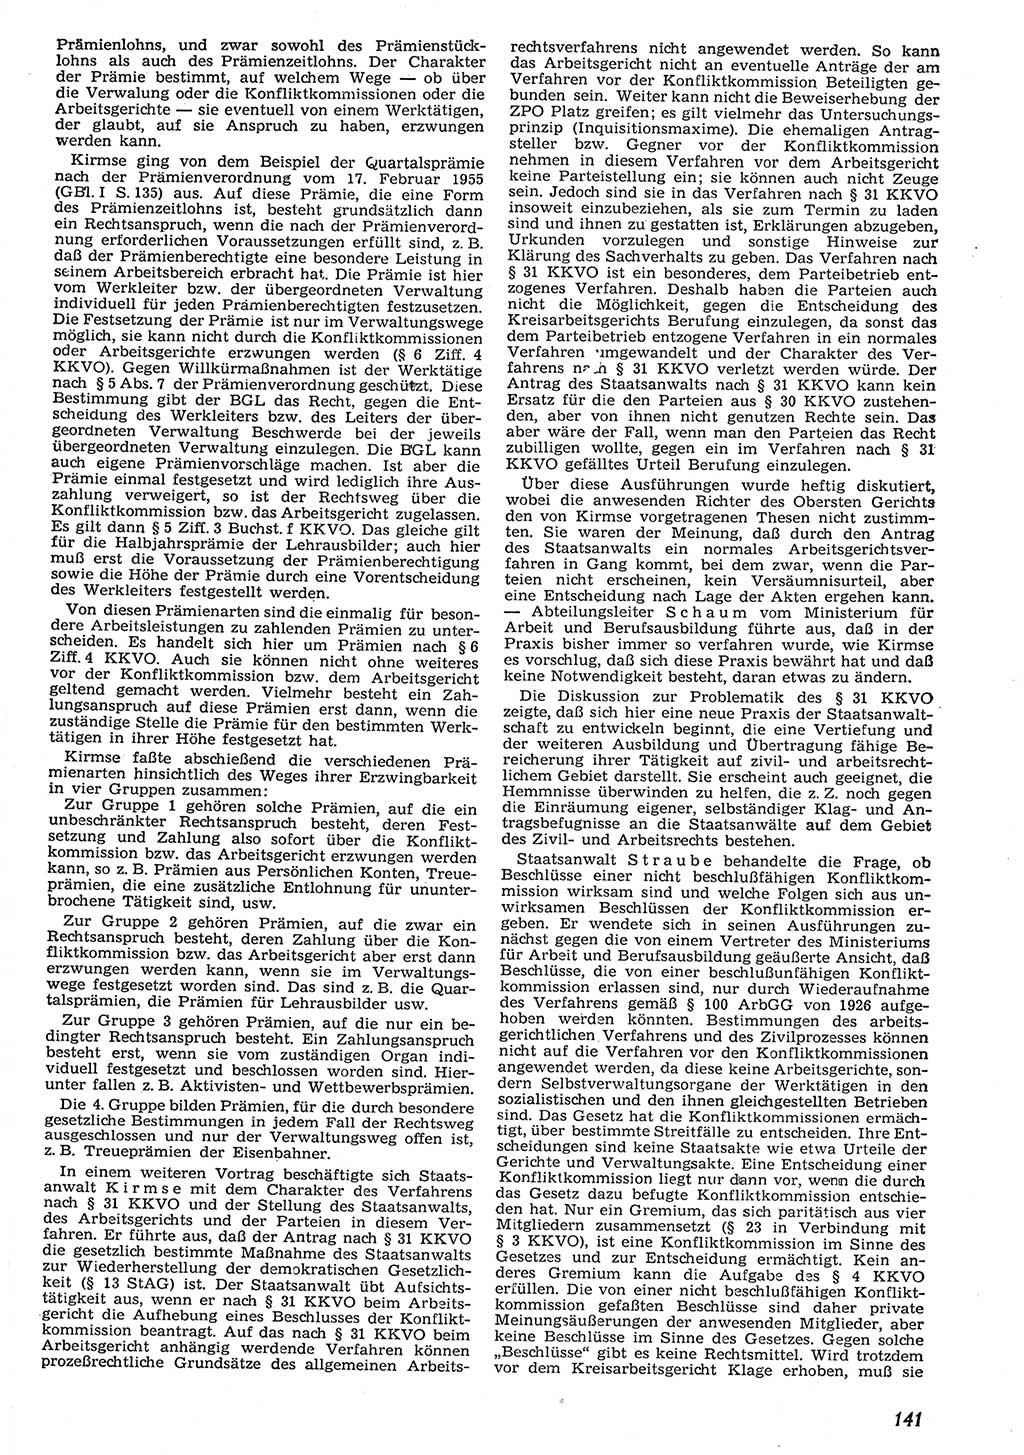 Neue Justiz (NJ), Zeitschrift für Recht und Rechtswissenschaft [Deutsche Demokratische Republik (DDR)], 10. Jahrgang 1956, Seite 141 (NJ DDR 1956, S. 141)